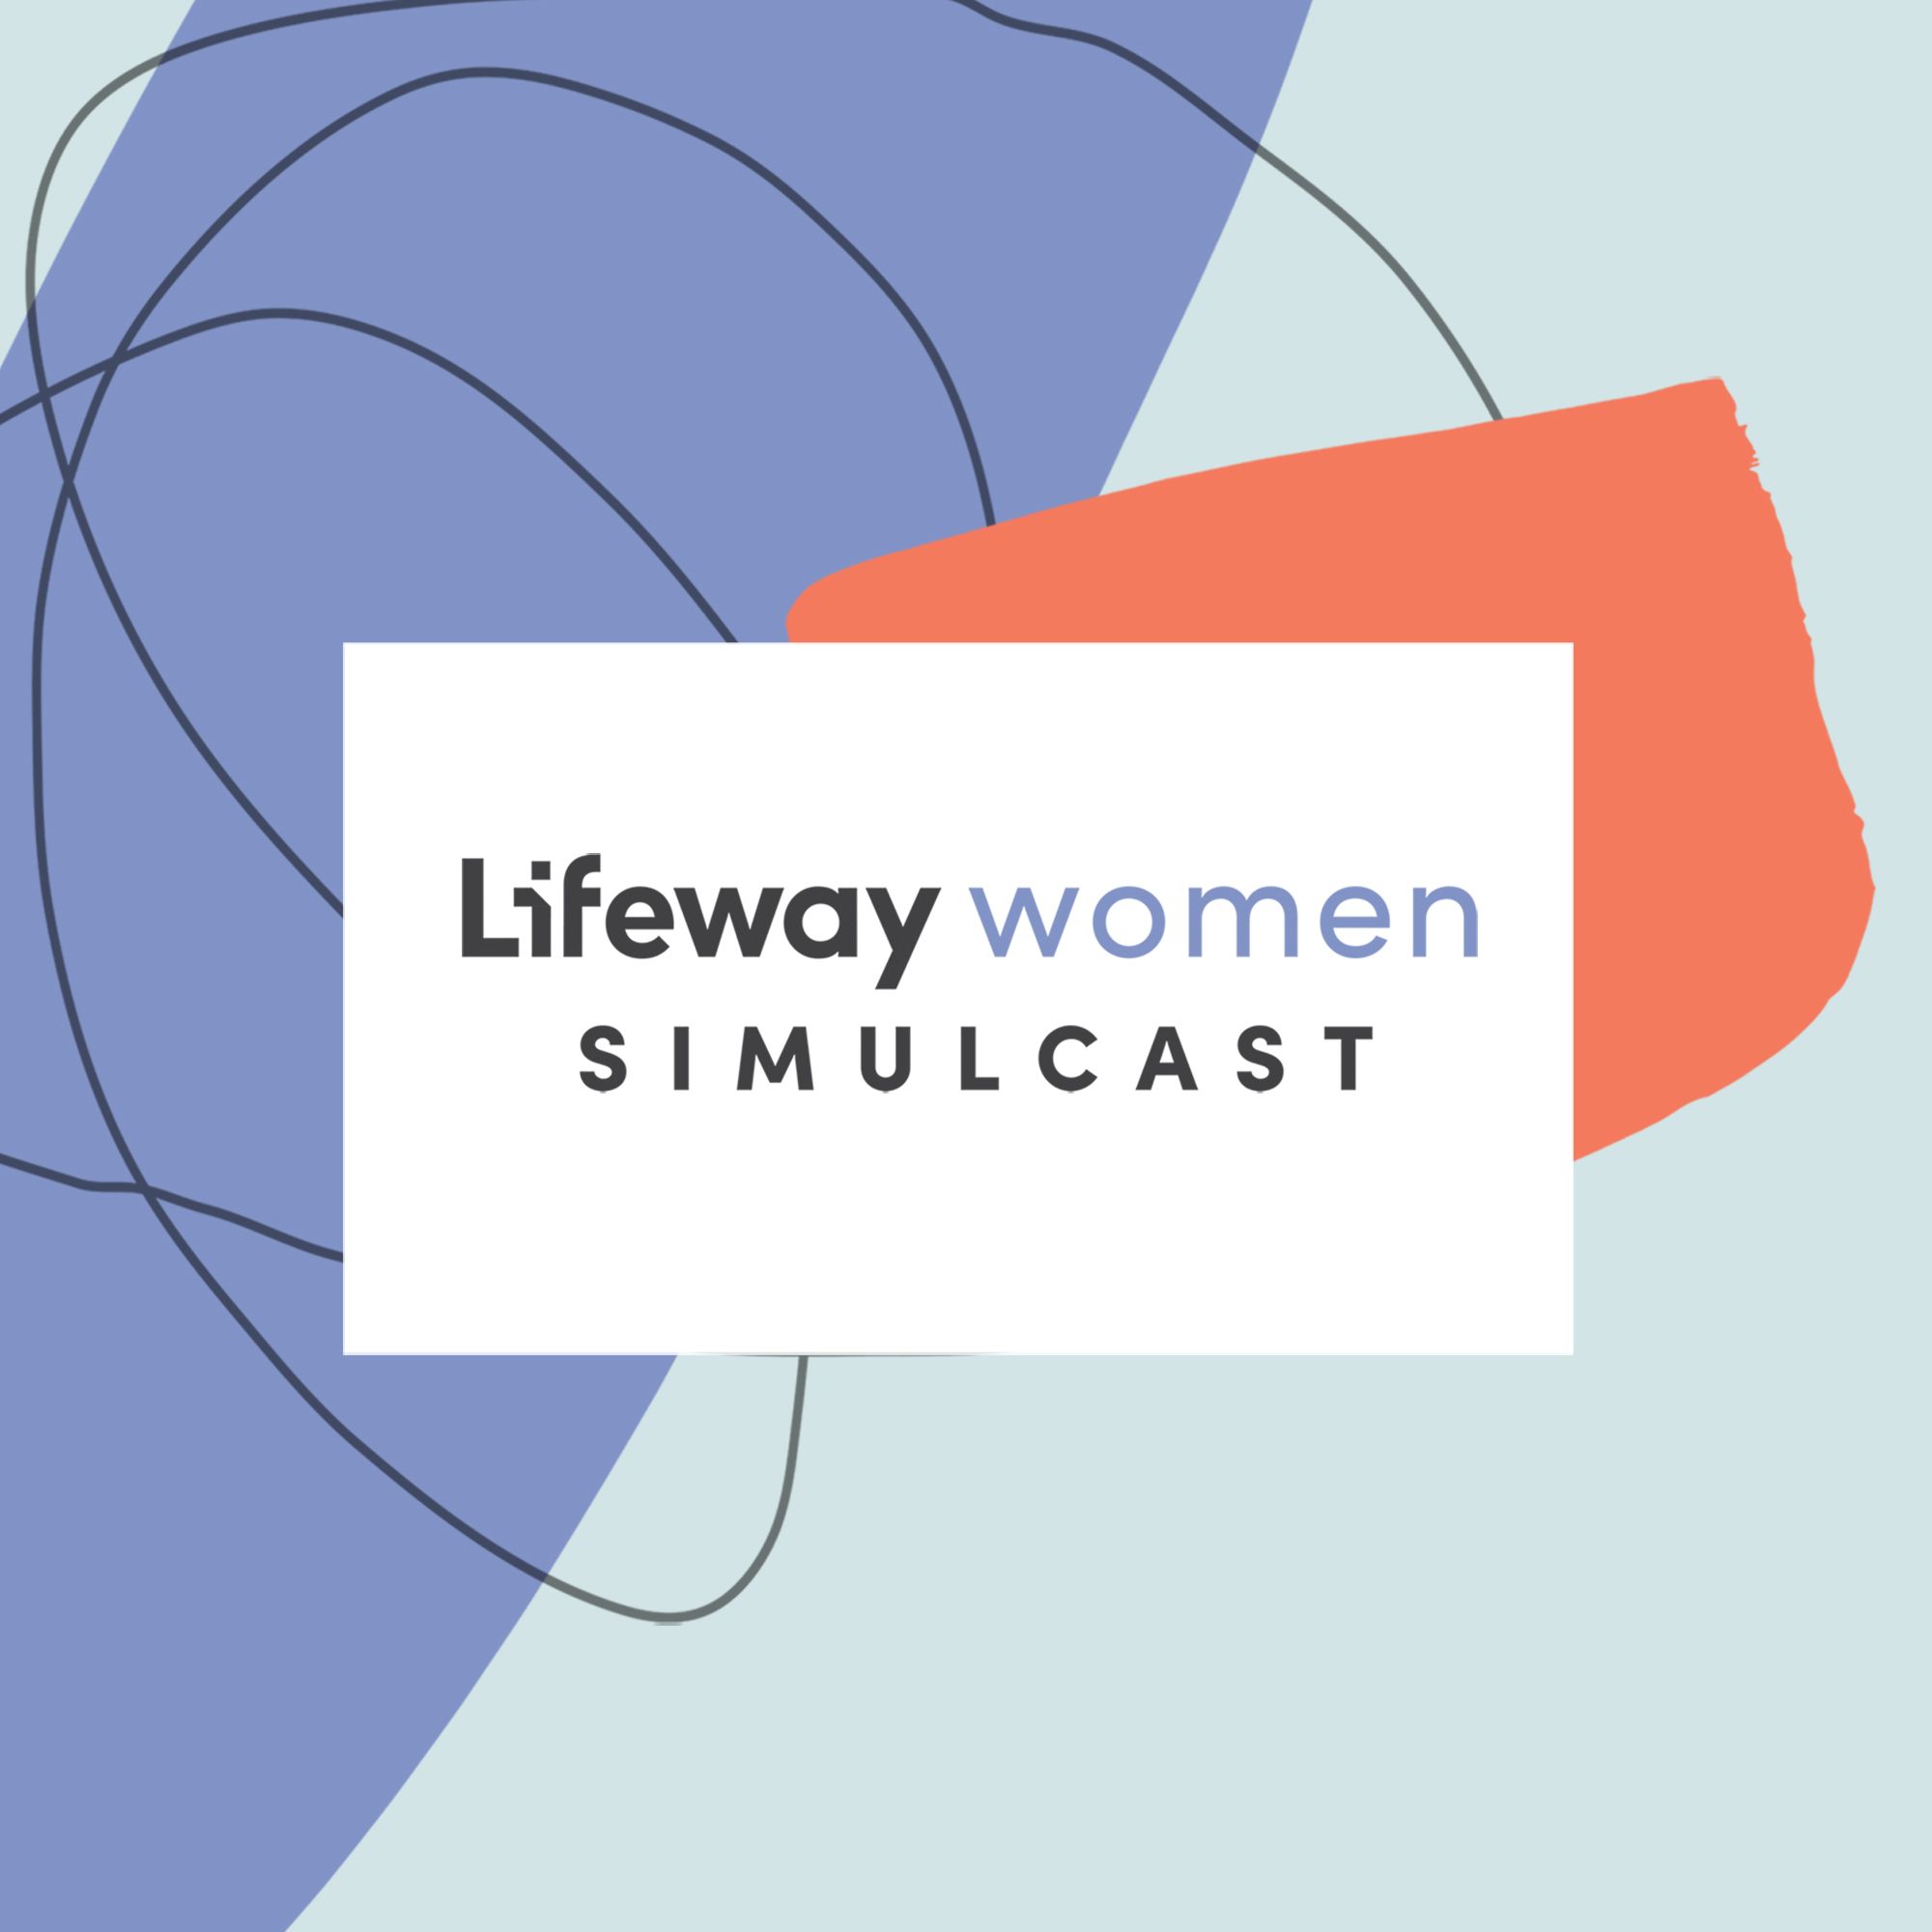 lifeway women simulcast